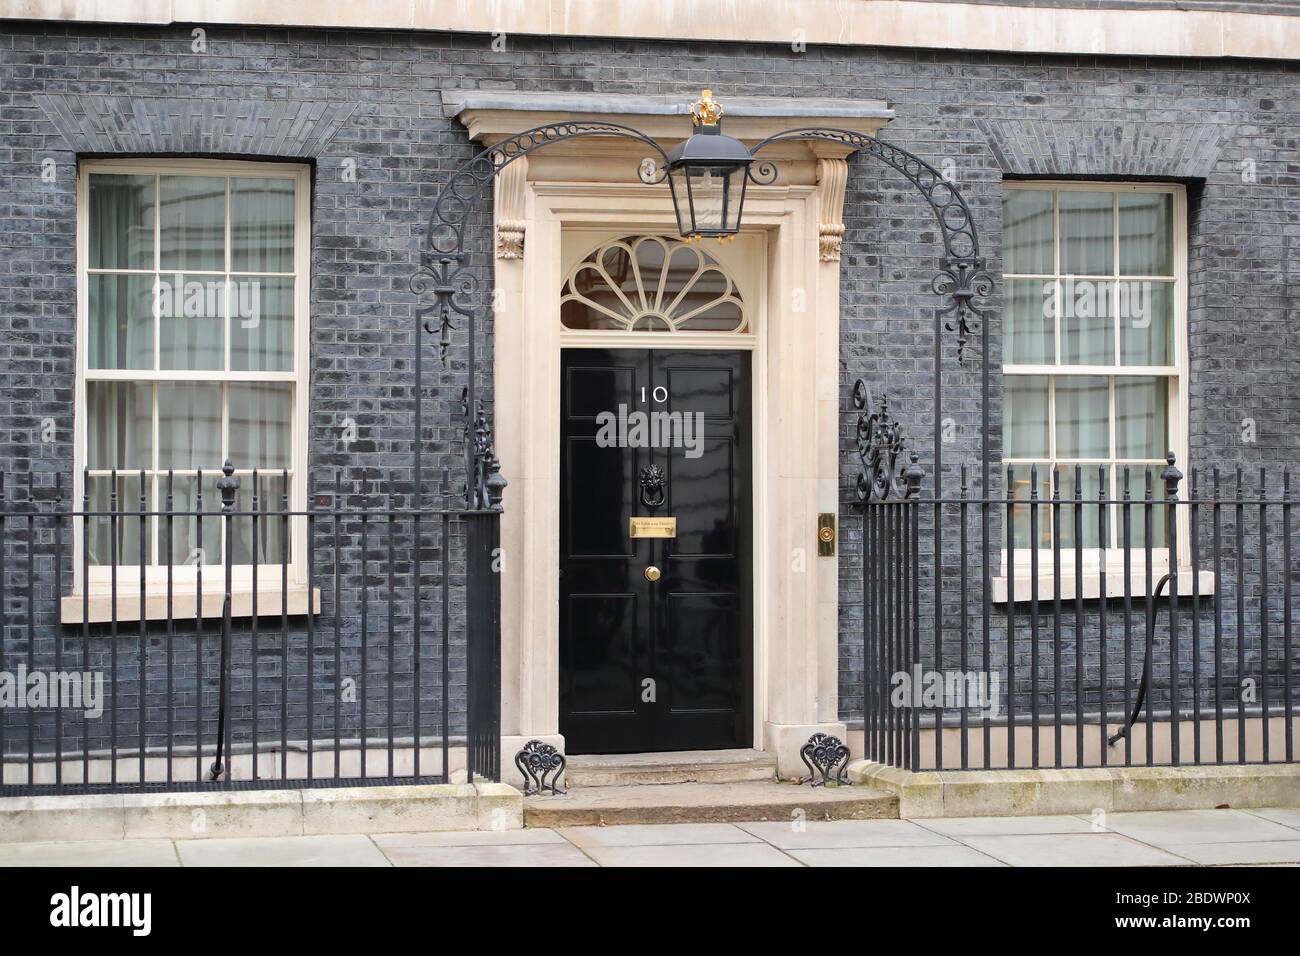 Eintritt zur Downing Street Nummer 10, der offiziellen Residenz des britischen Premierministers, London, Großbritannien Stockfoto